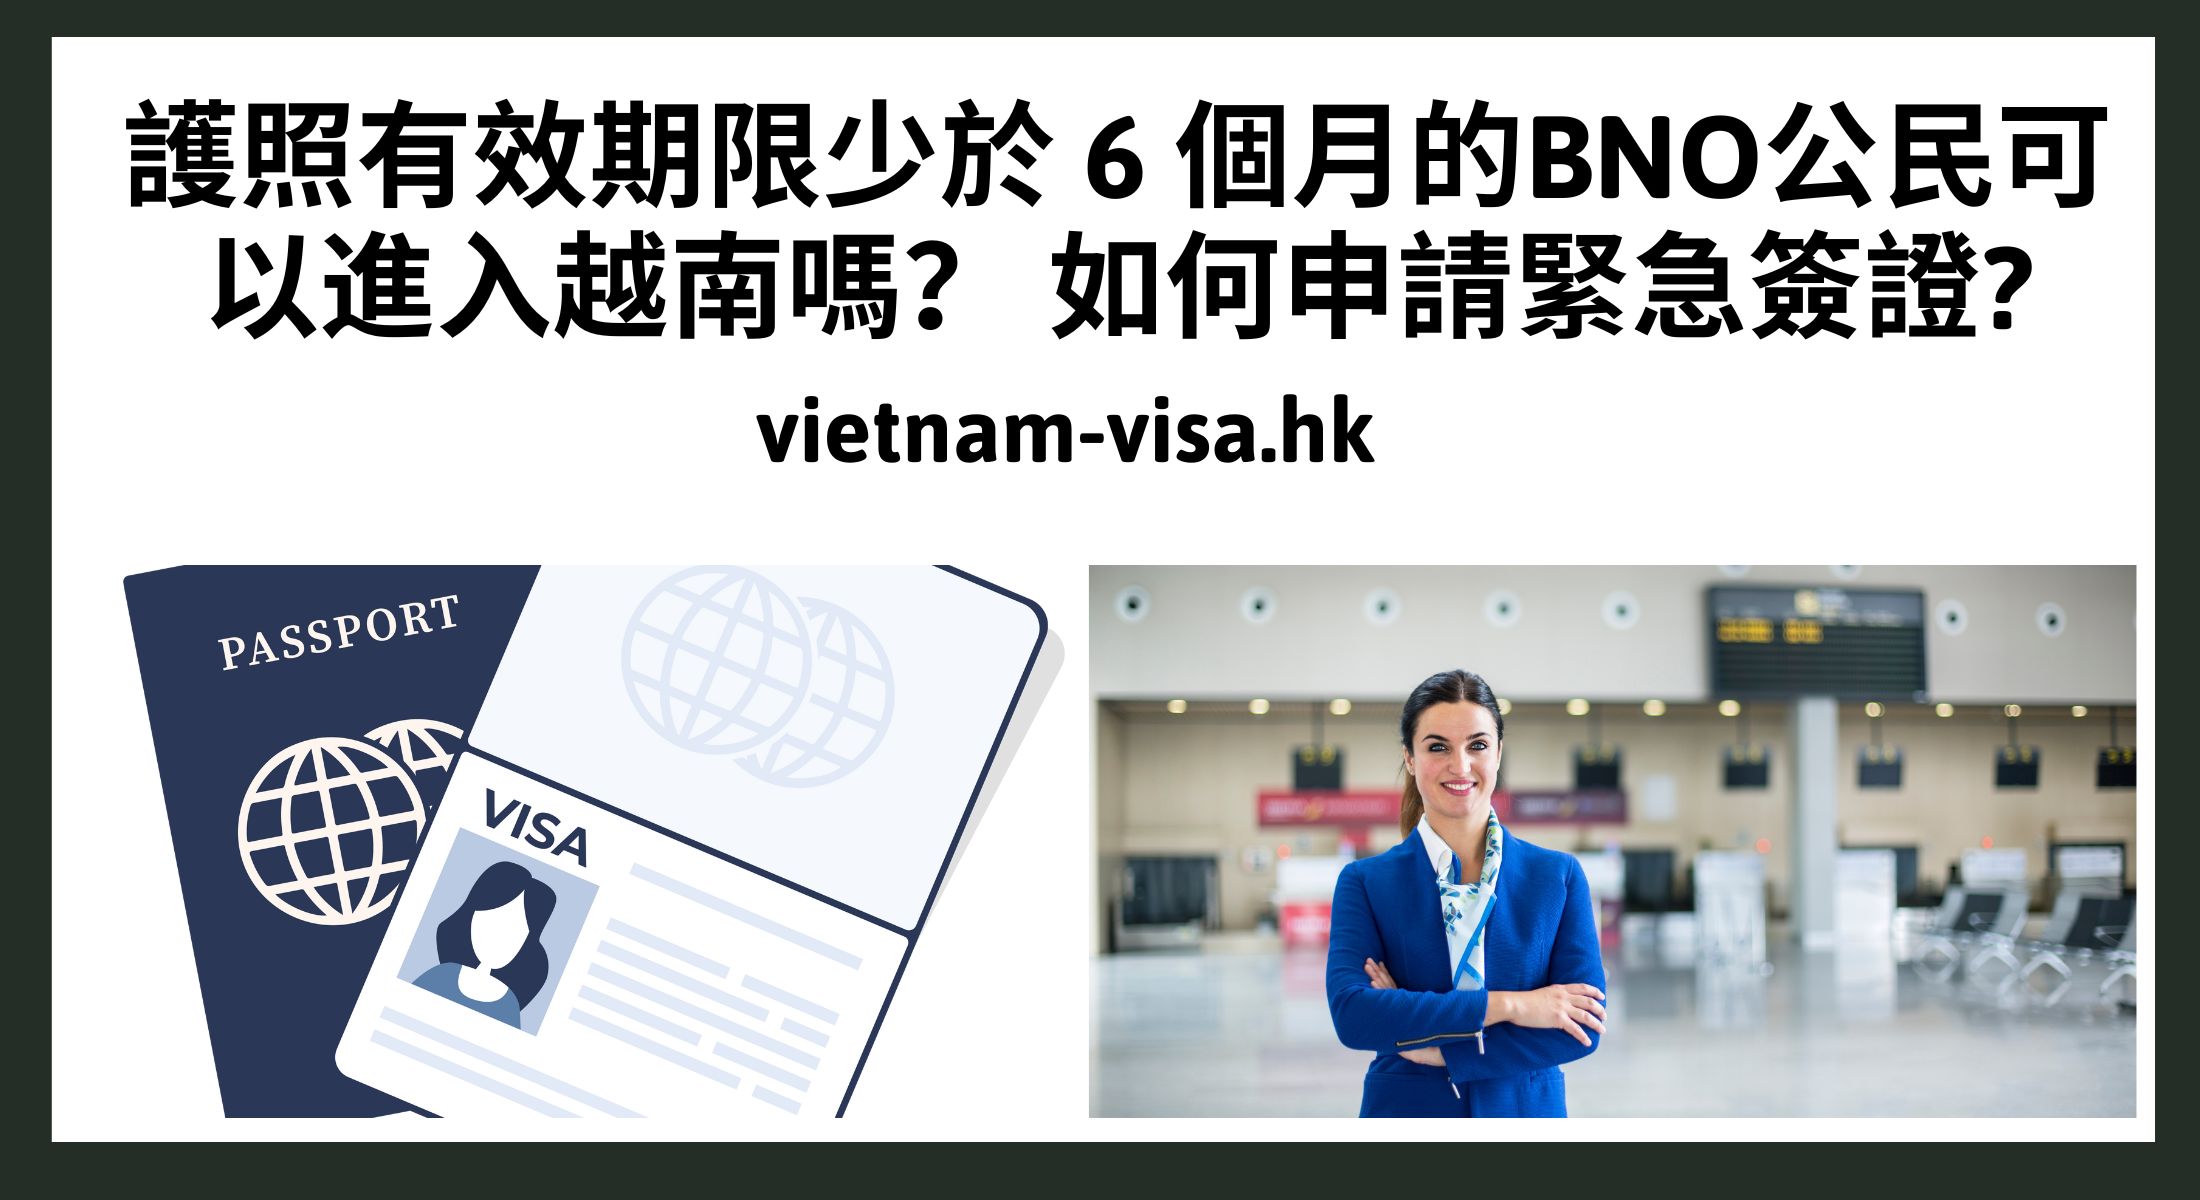 護照有效期限少於 6 個月的BNO公民可以進入越南嗎？ 如何申請緊急簽證?